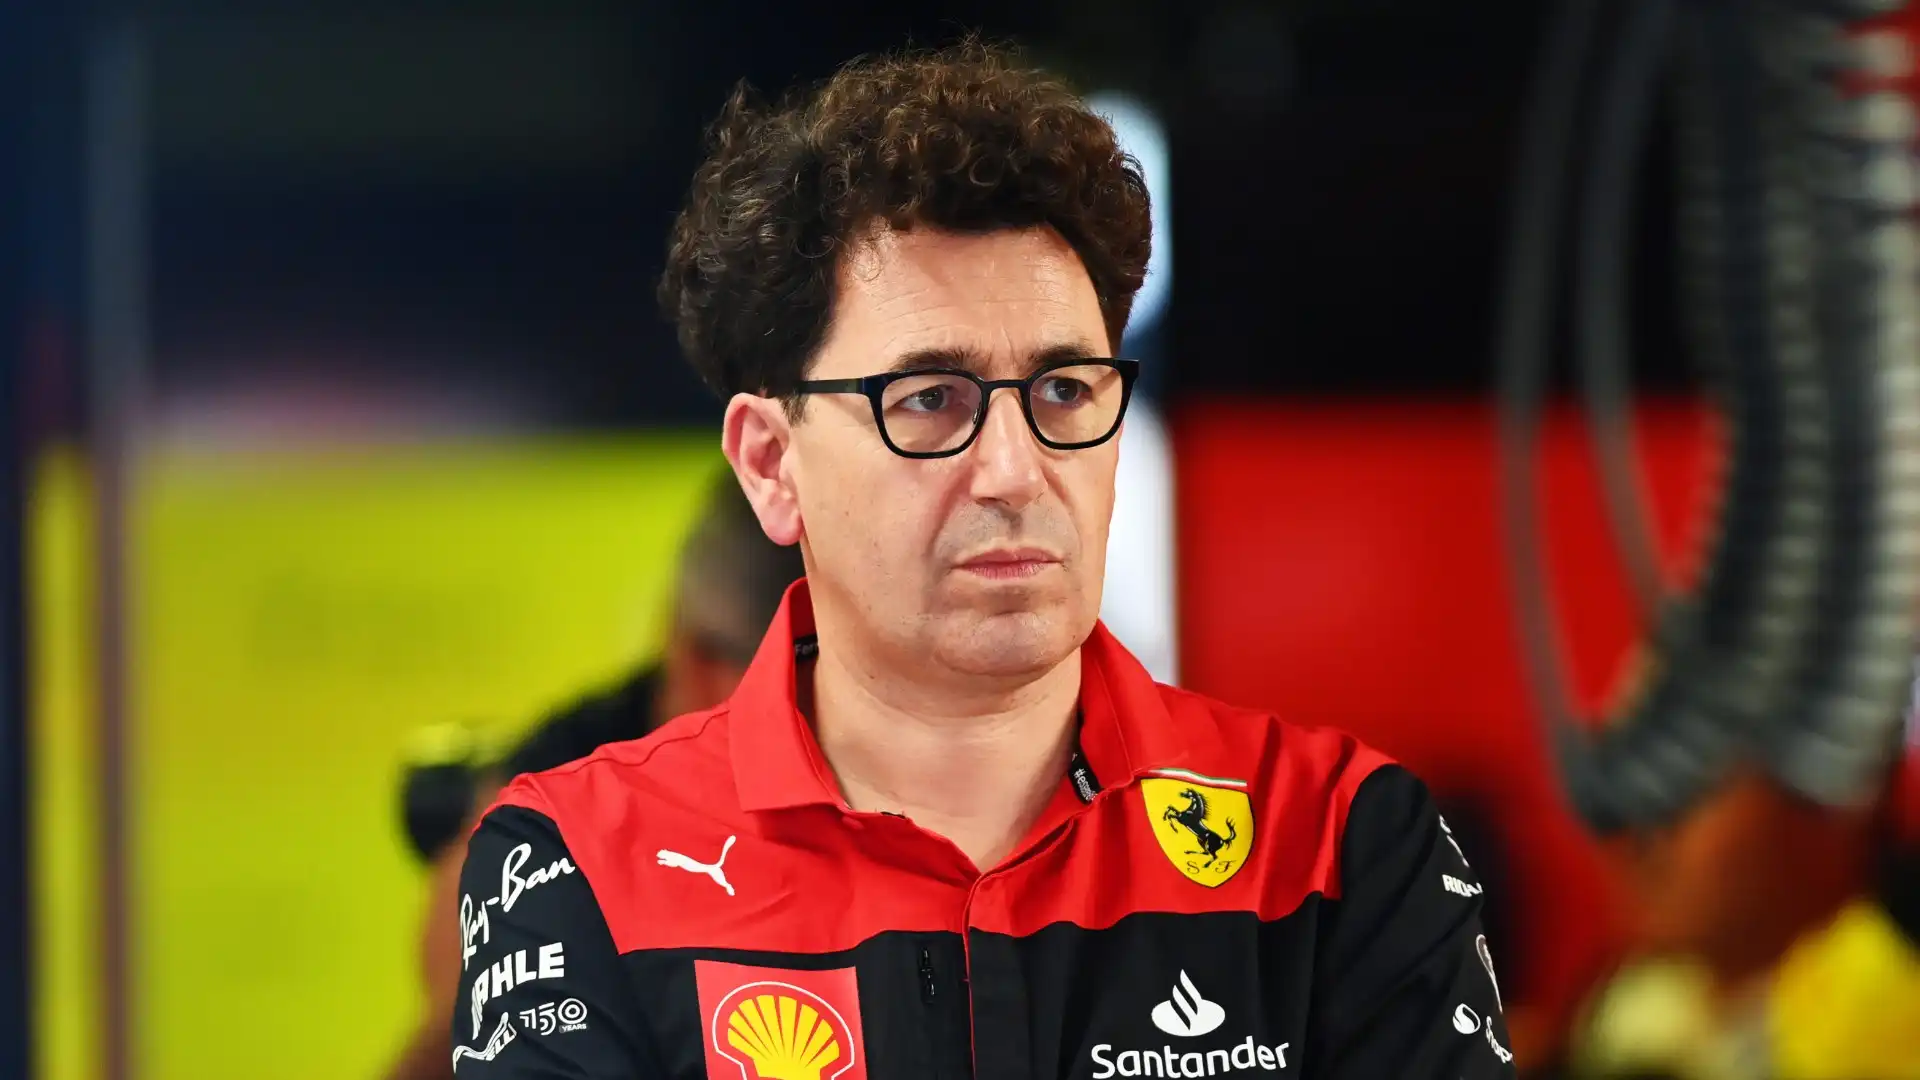 Mattia Binotto, Ferrari definitivamente dimenticata: ora può accasarsi altrove